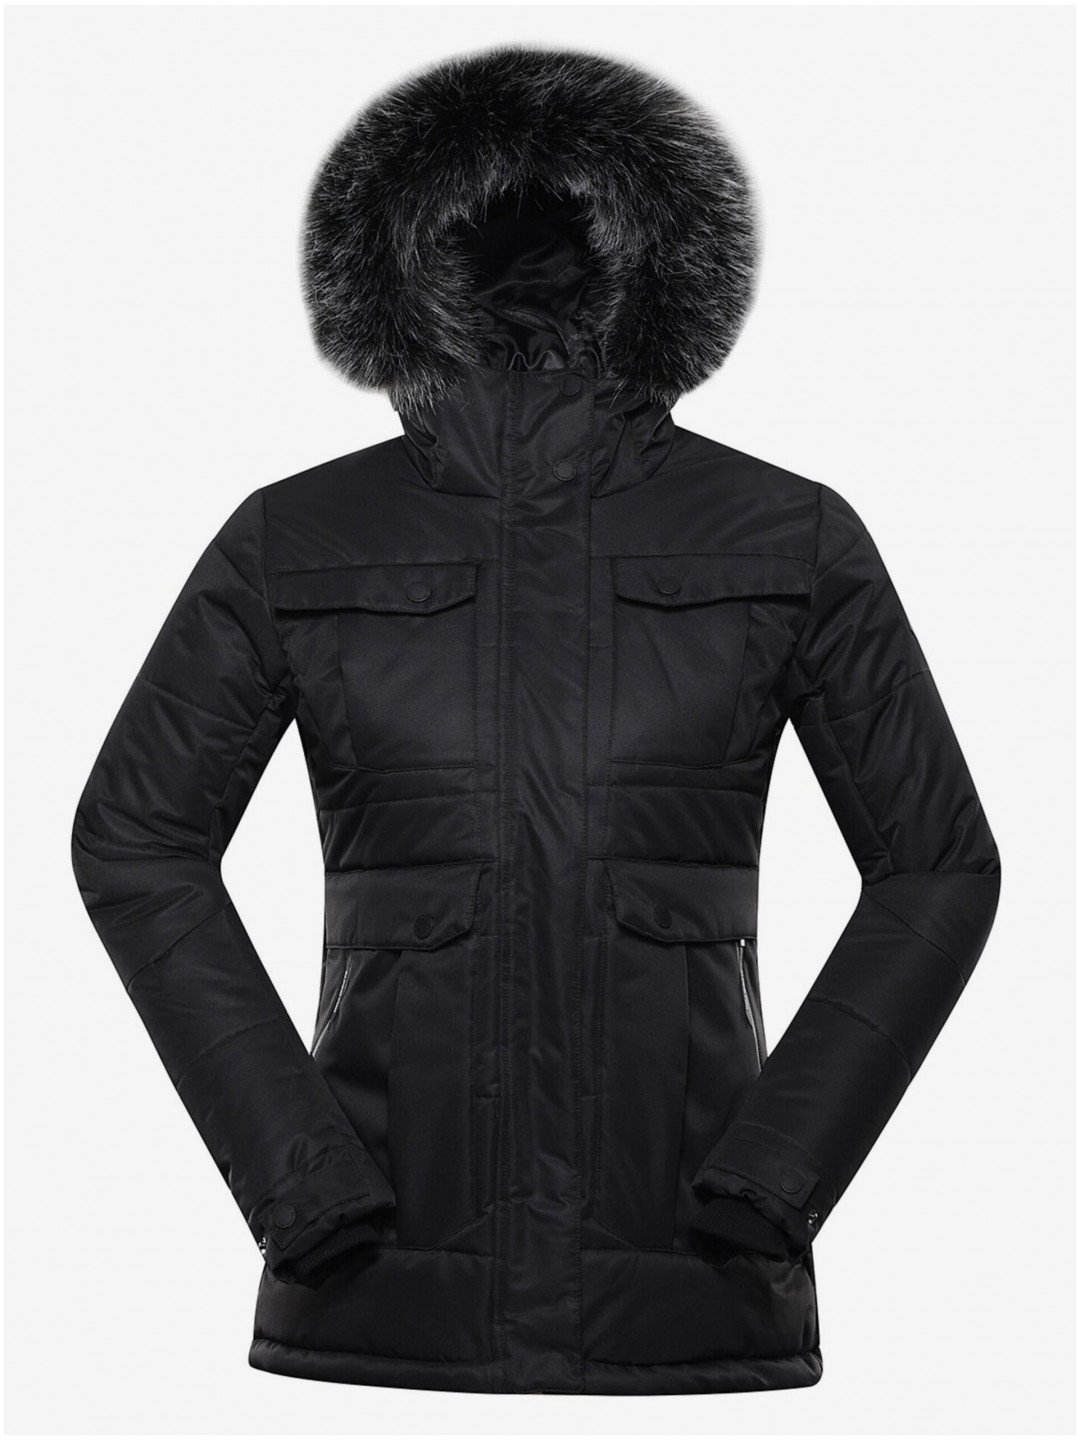 Černá dámská zimní bunda ALPINE PRO EGYPA